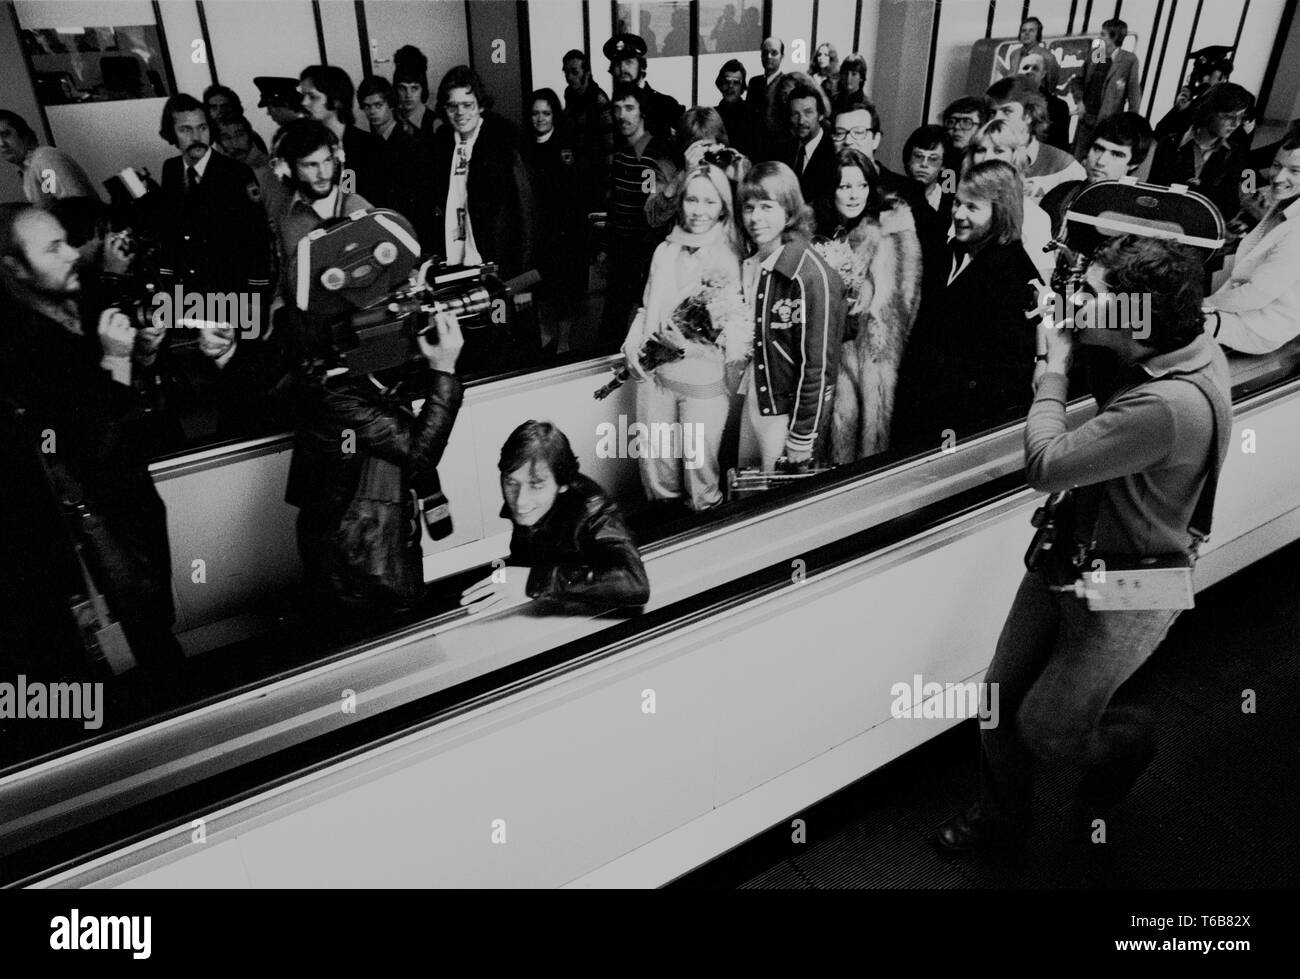 Drei Songs in Den Haag aufgenommen werden, für die niederländischen TV-Programm "een van de acht' am 23. November 1976 der Flughafen Schiphol, Niederlande - 1976, *** Local Caption *** abba Benny Andersson Agnetha Fältskog Björn Ulvaeus Anni-Frid Lyngstad Stockfoto